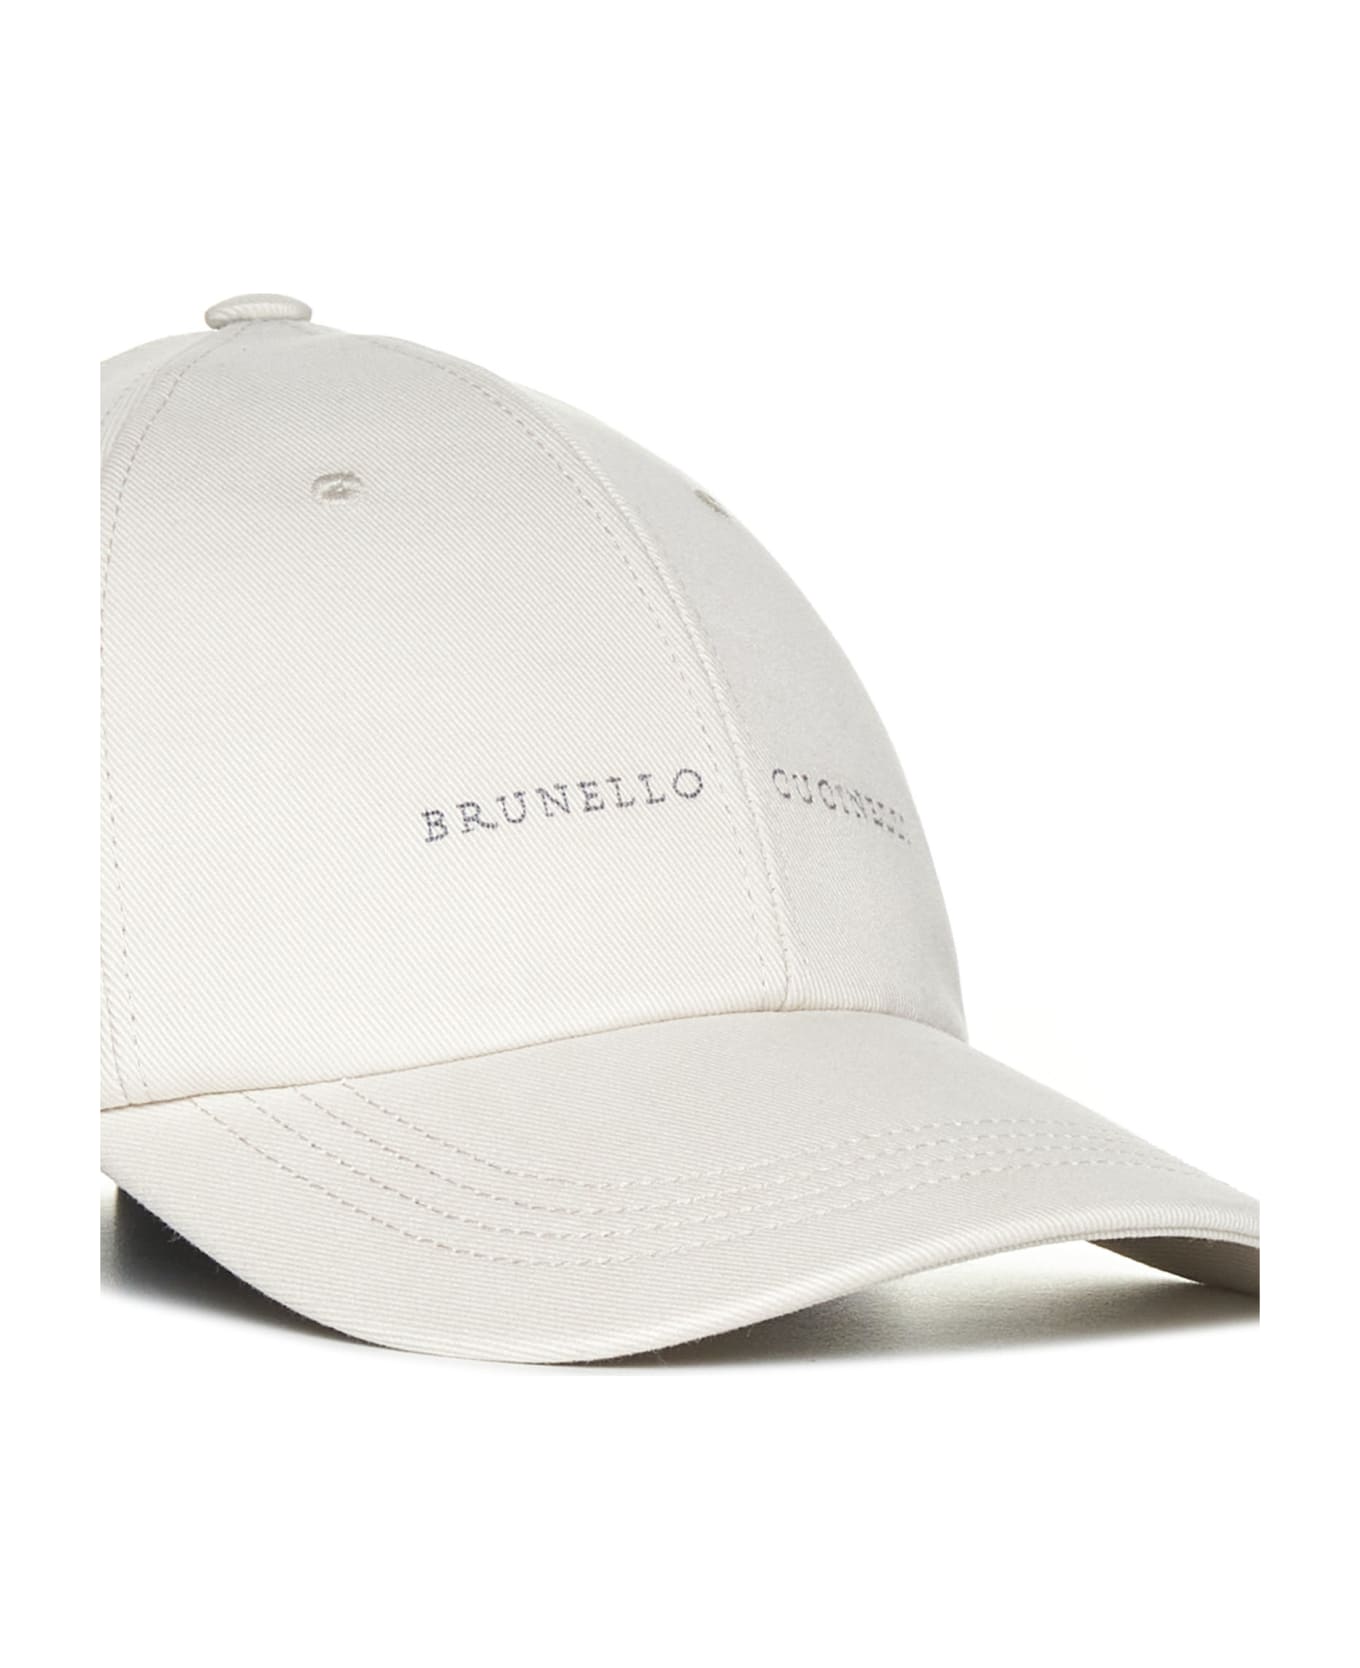 Brunello Cucinelli Logo Embroidered Baseball Cap - Avorio